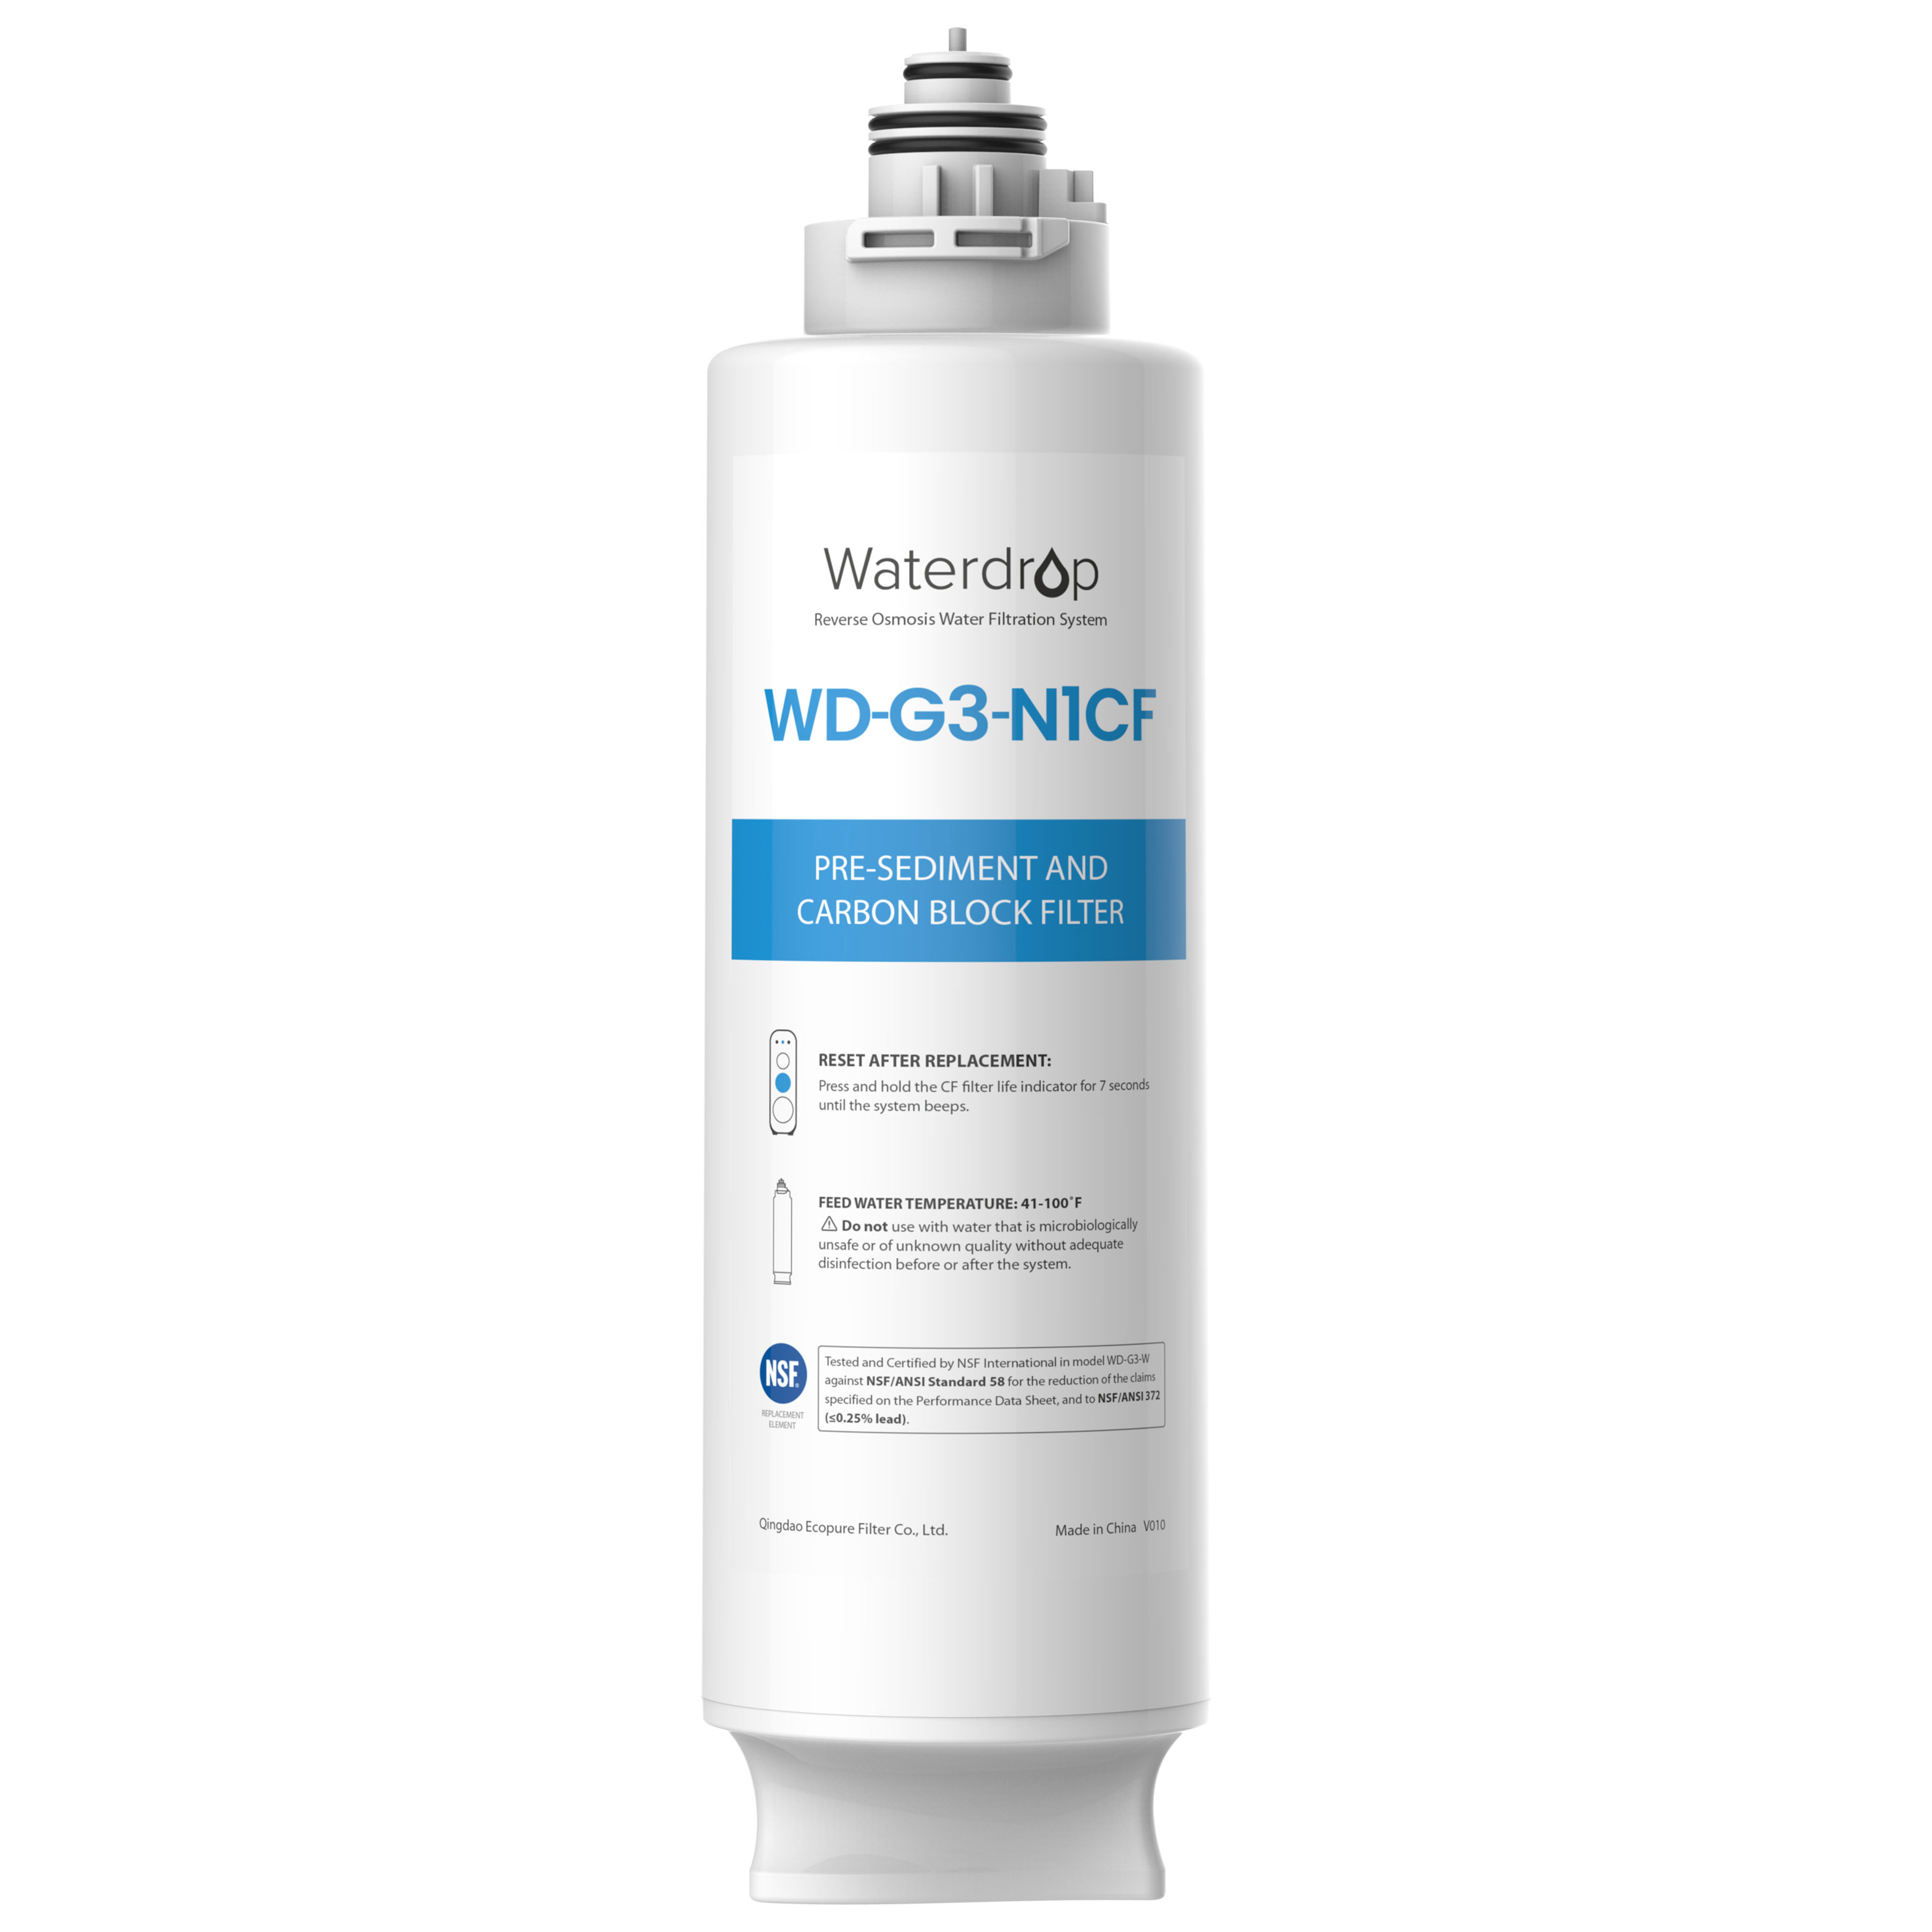 Lõi lọc CF Waterdrop WD-G3-N1CF